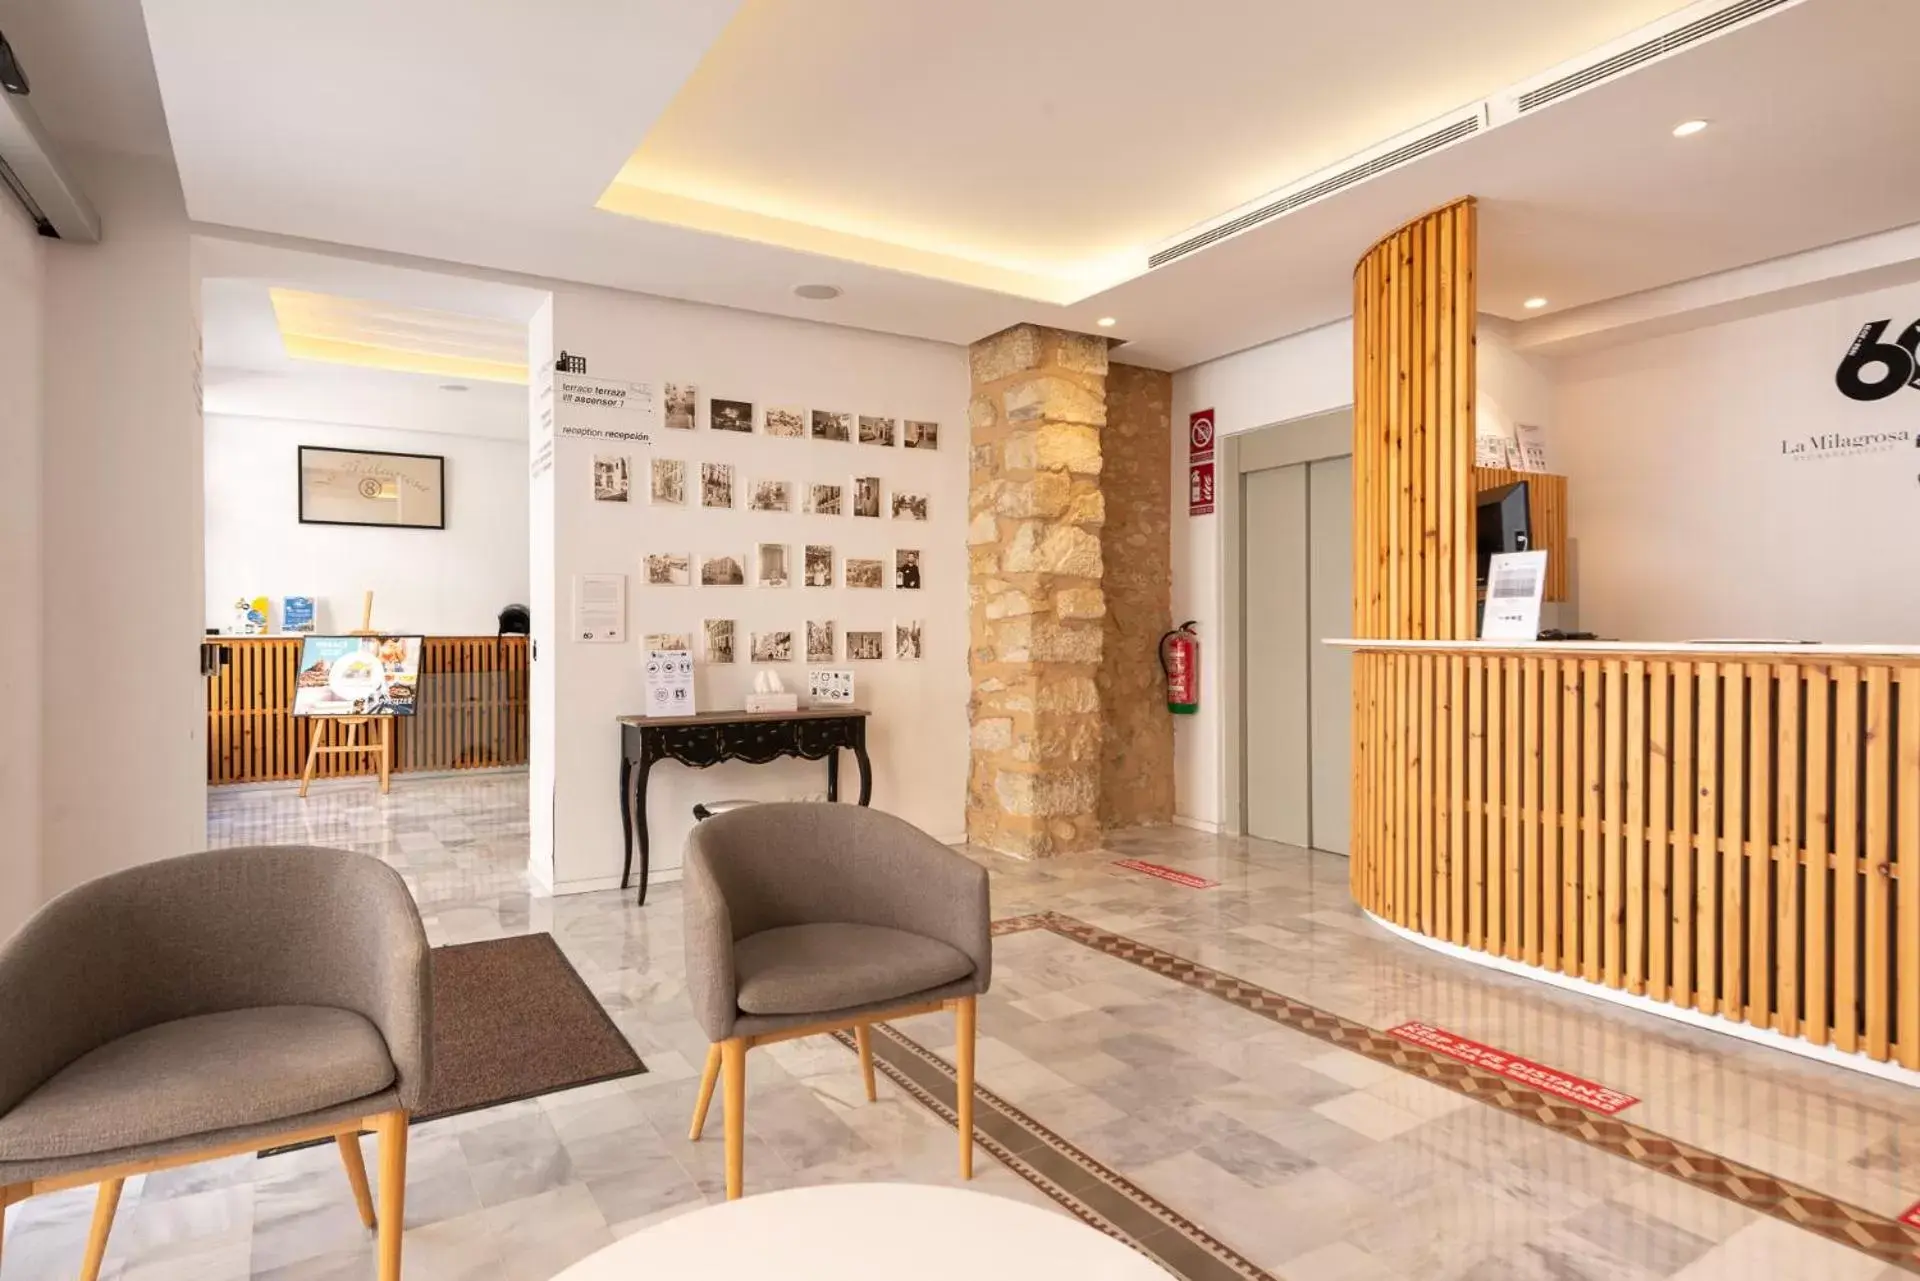 Lobby or reception in Hotel La Milagrosa